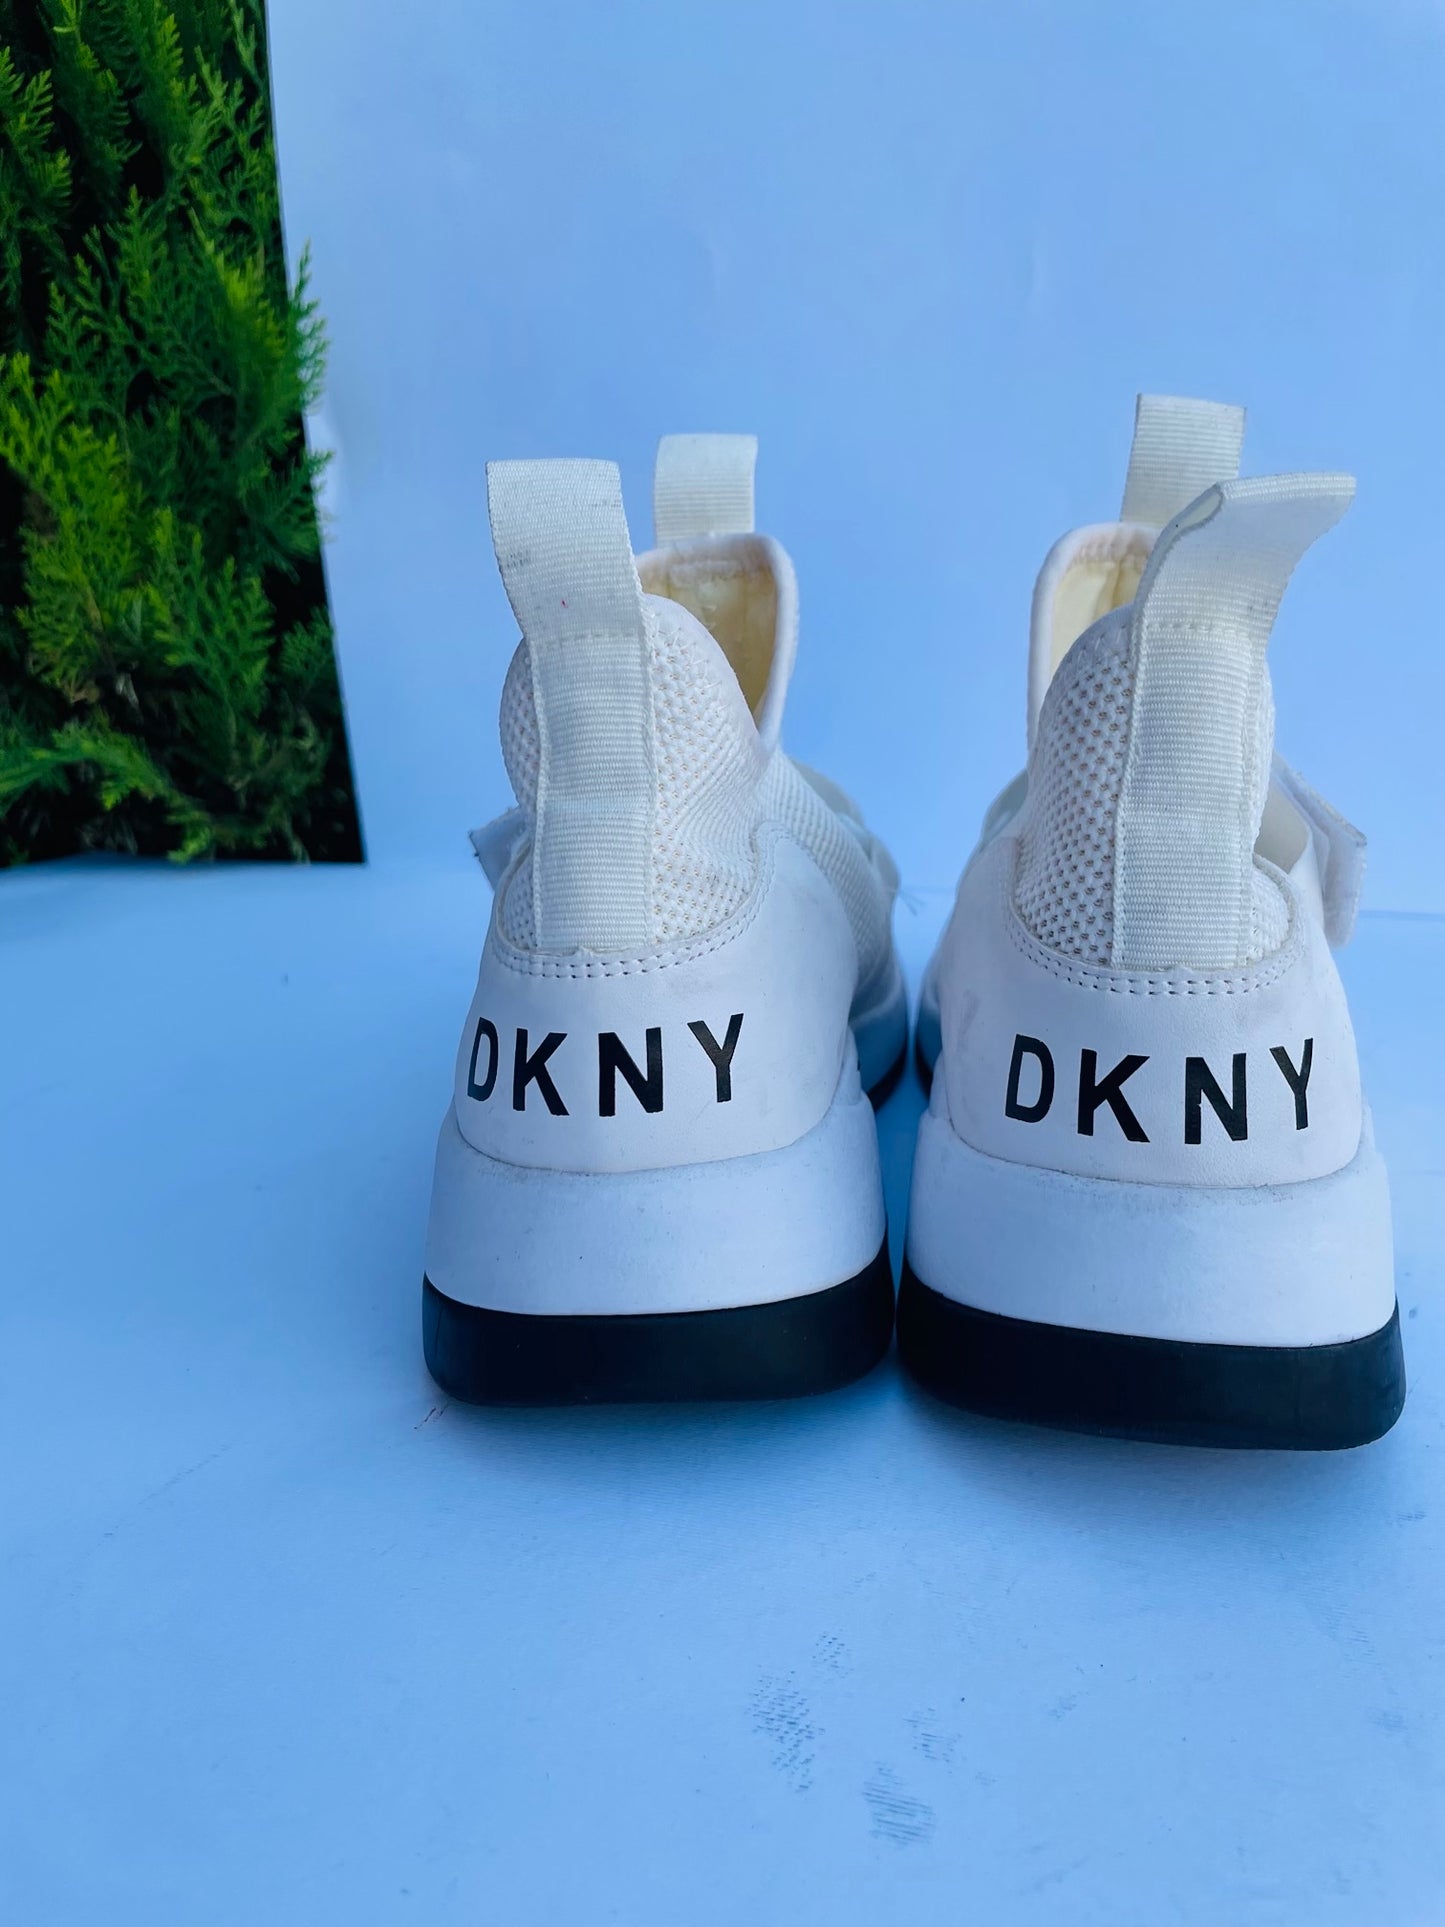 Dkny sneakers